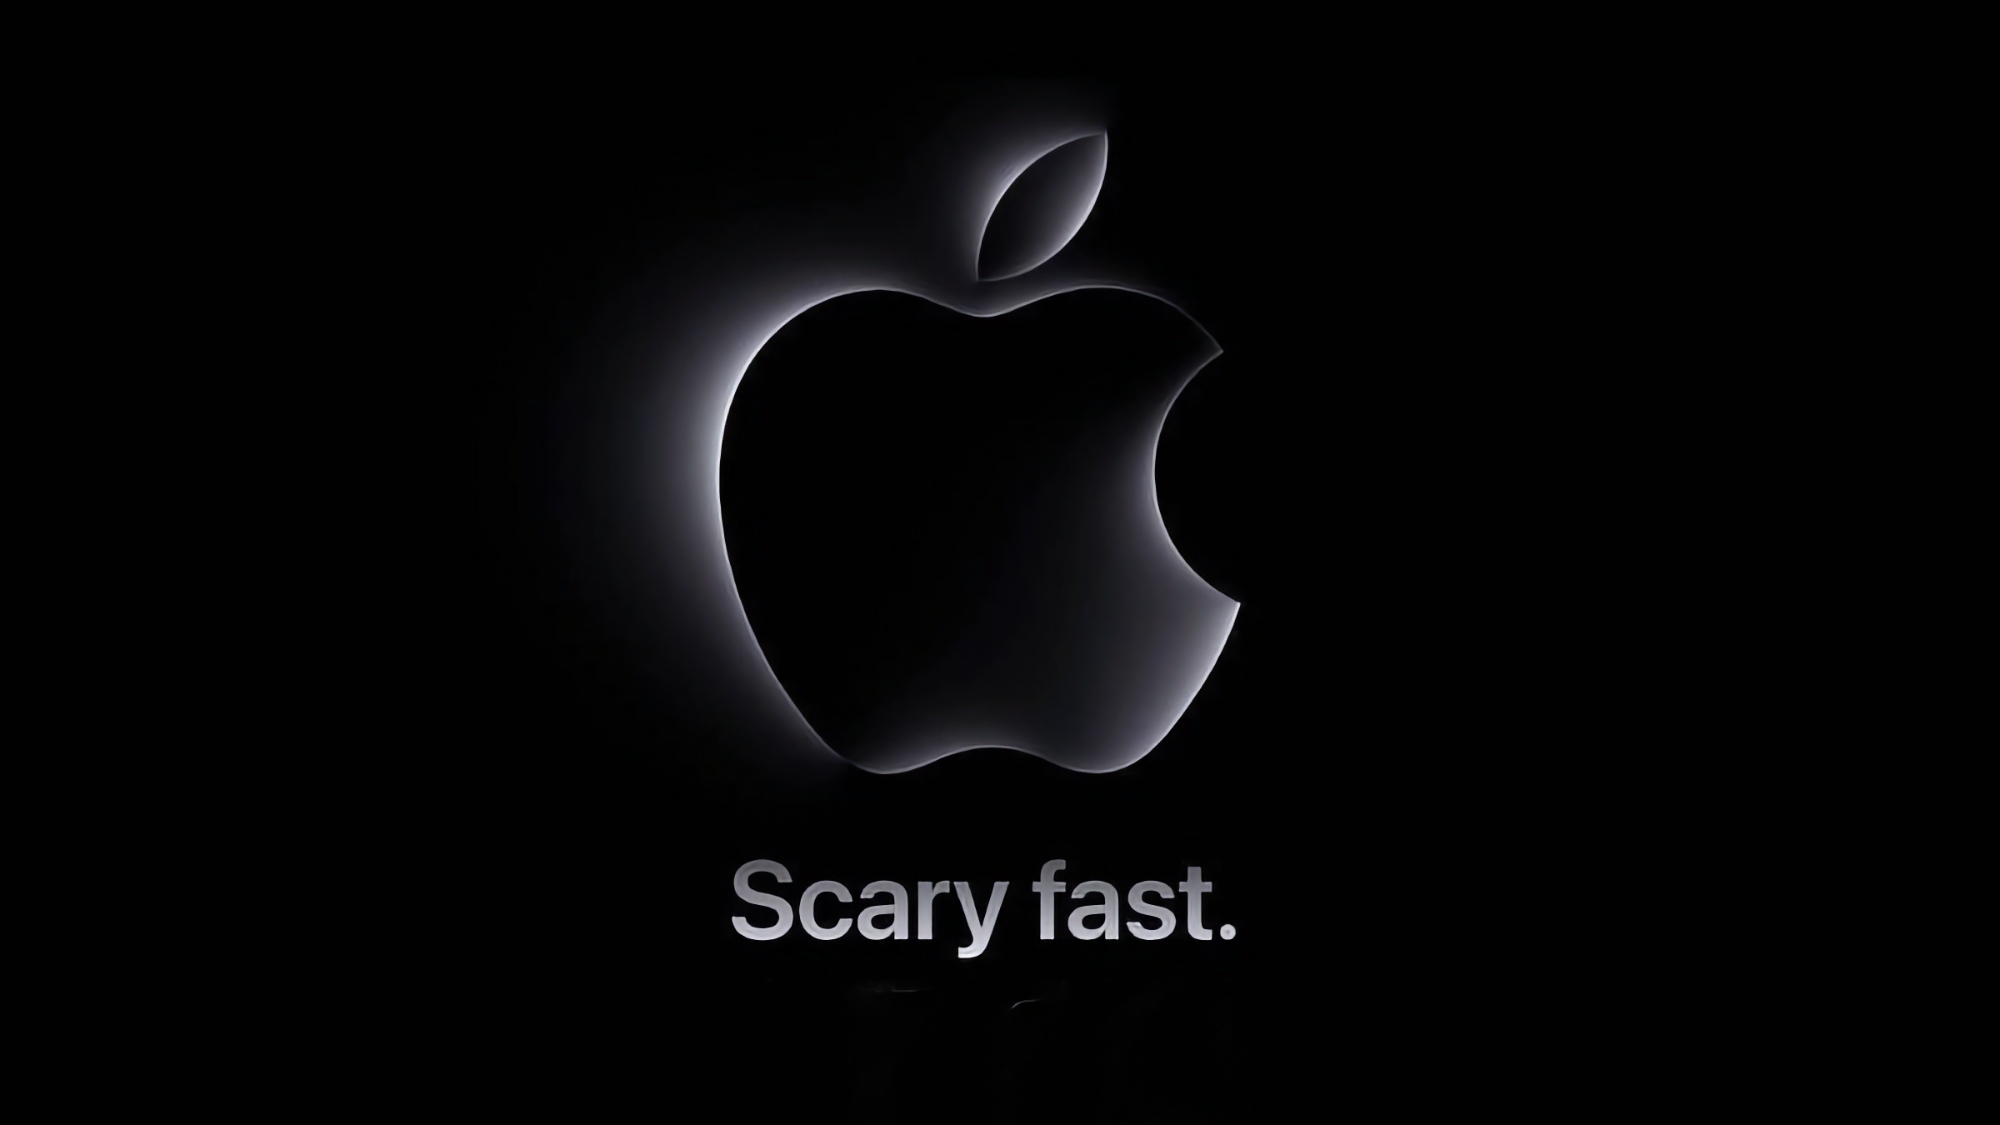 Де і коли дивитися презентацію Apple "Scary Fast"